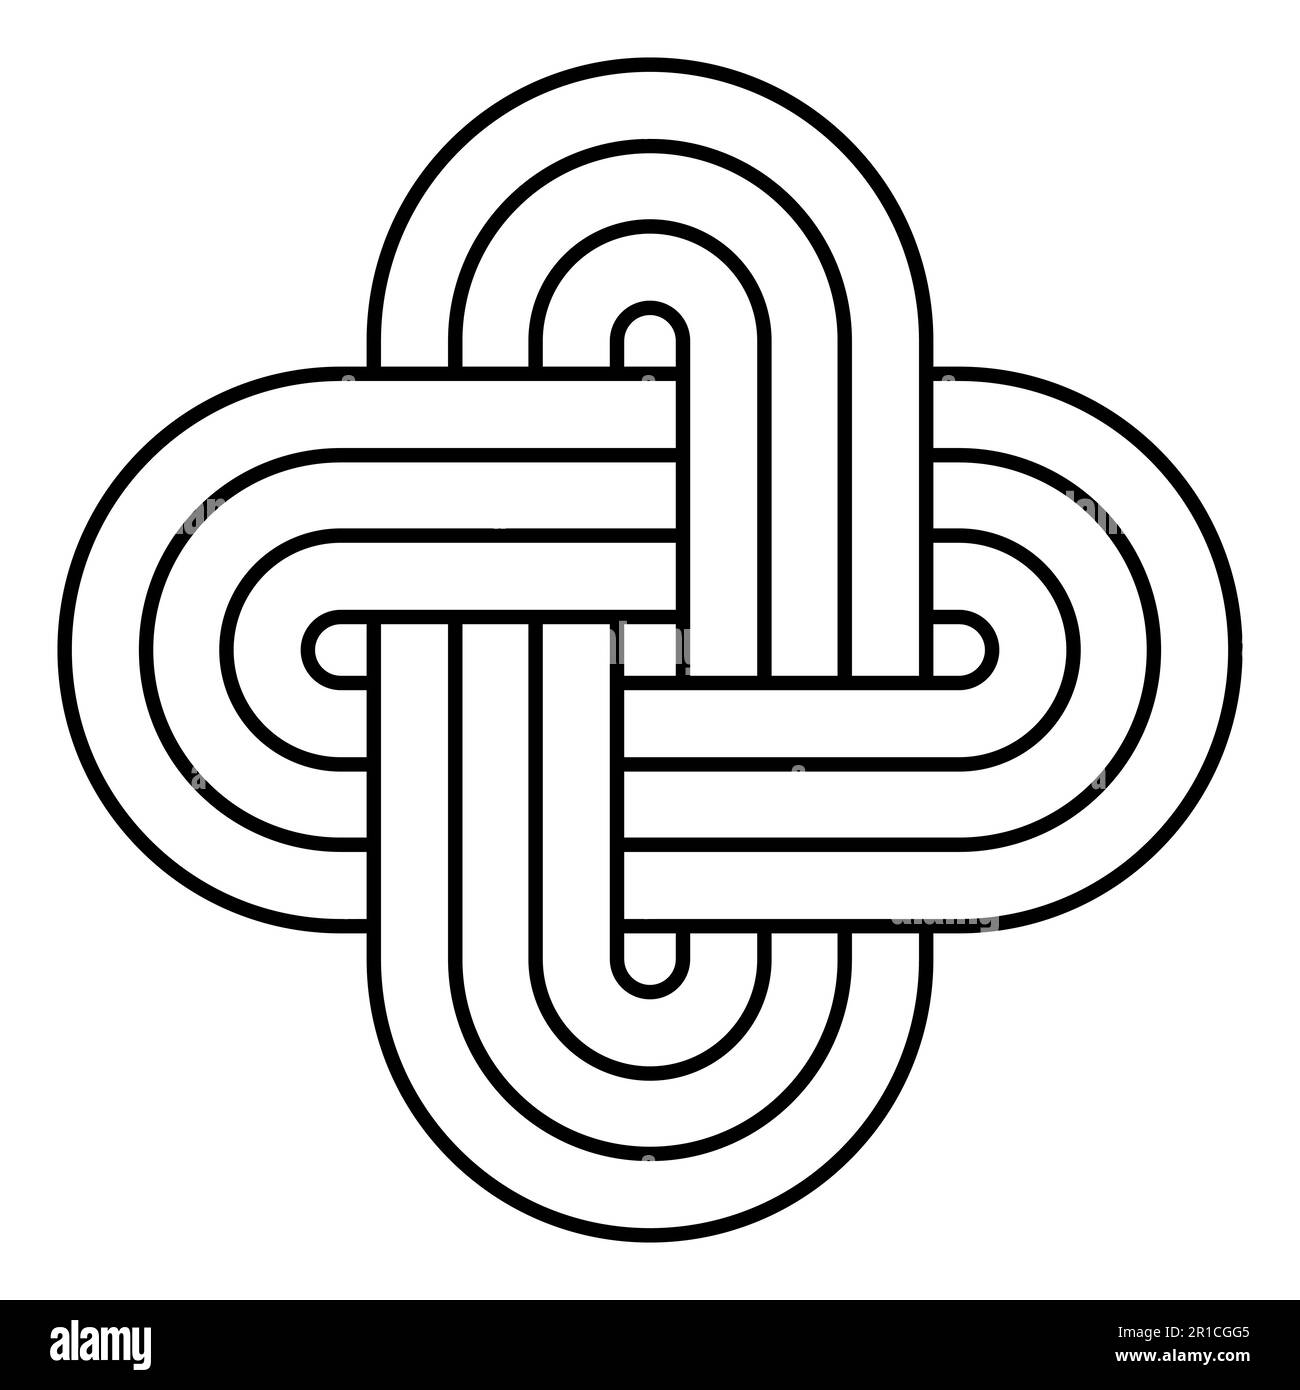 Salomonen-Knoten, ein altes Symbol und traditionelles dekoratives Motiv. Sigillum Salomonis, ein Glied und kein echter Knoten, bestehend aus zwei geschlossenen Schleifen. Stockfoto